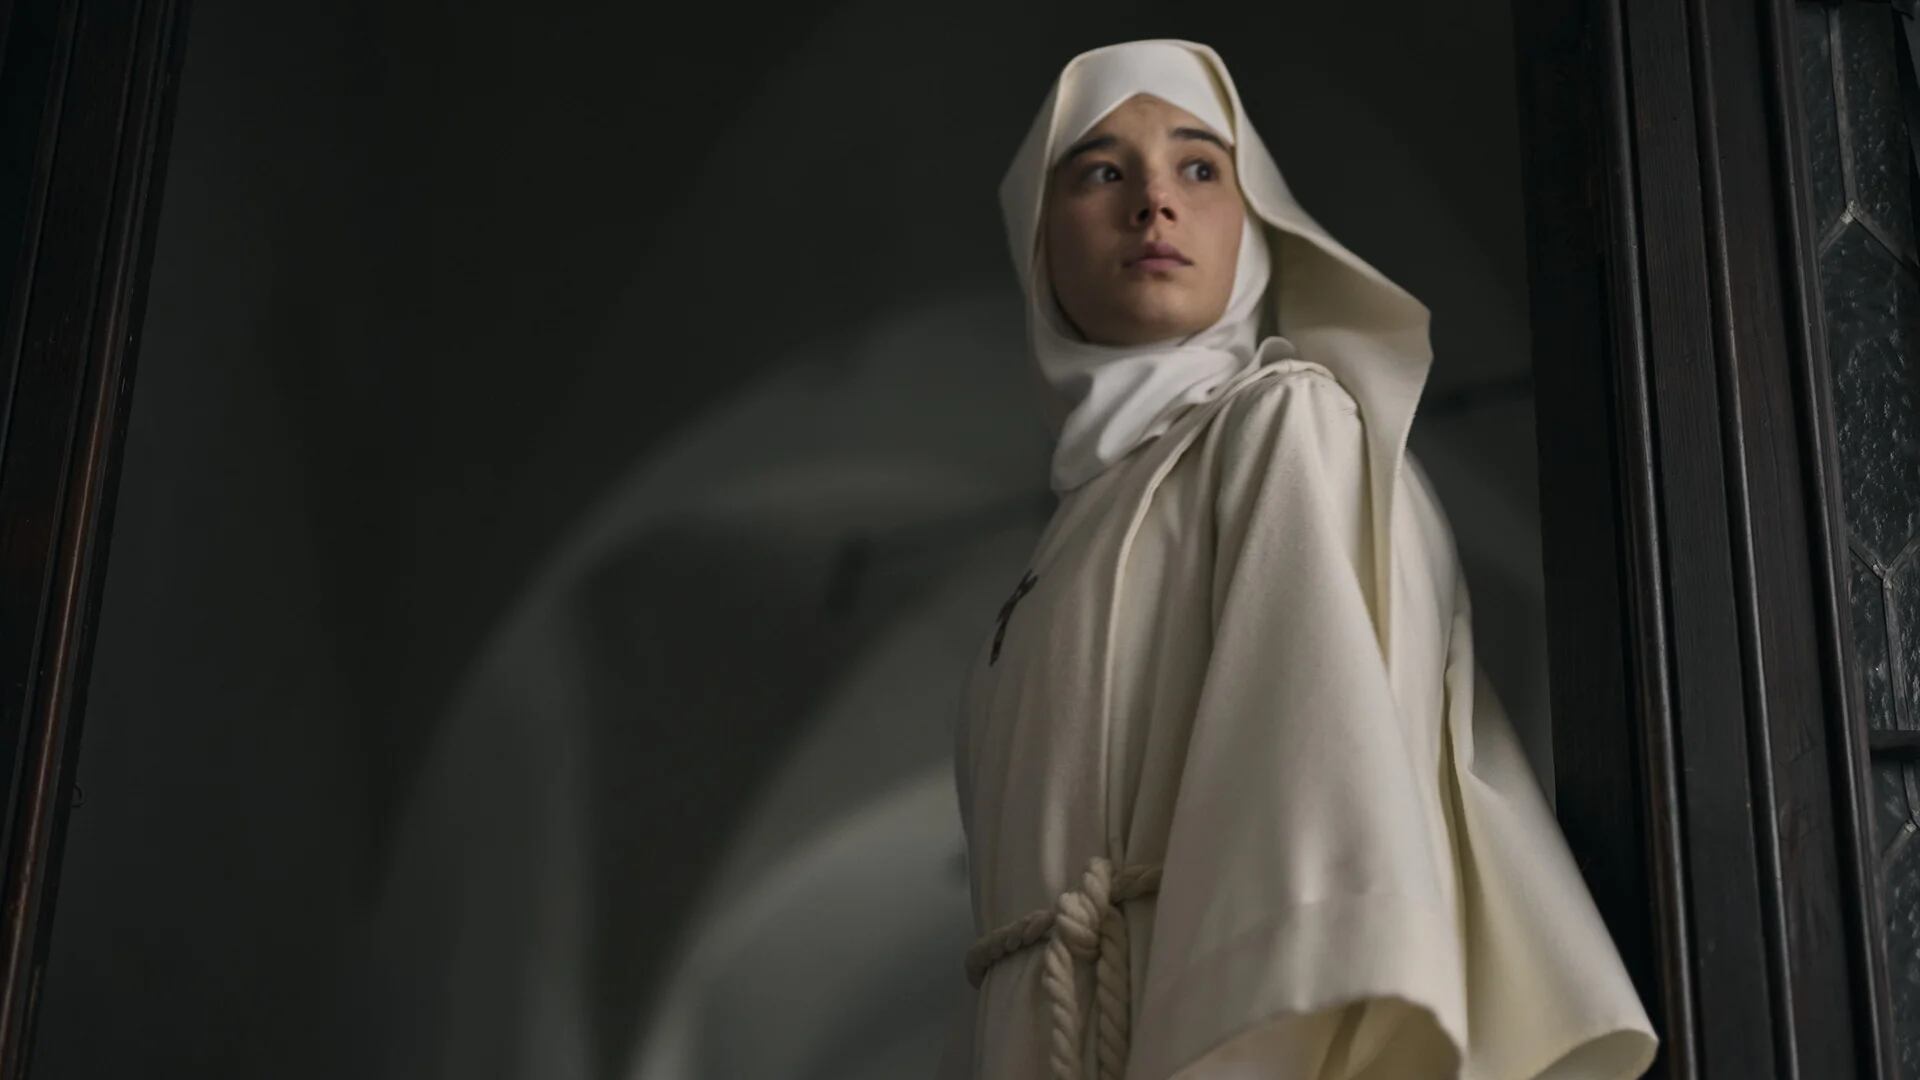 Mira el tráiler de “Hermana muerte”, la película de terror español ambientada en un oscuro convento